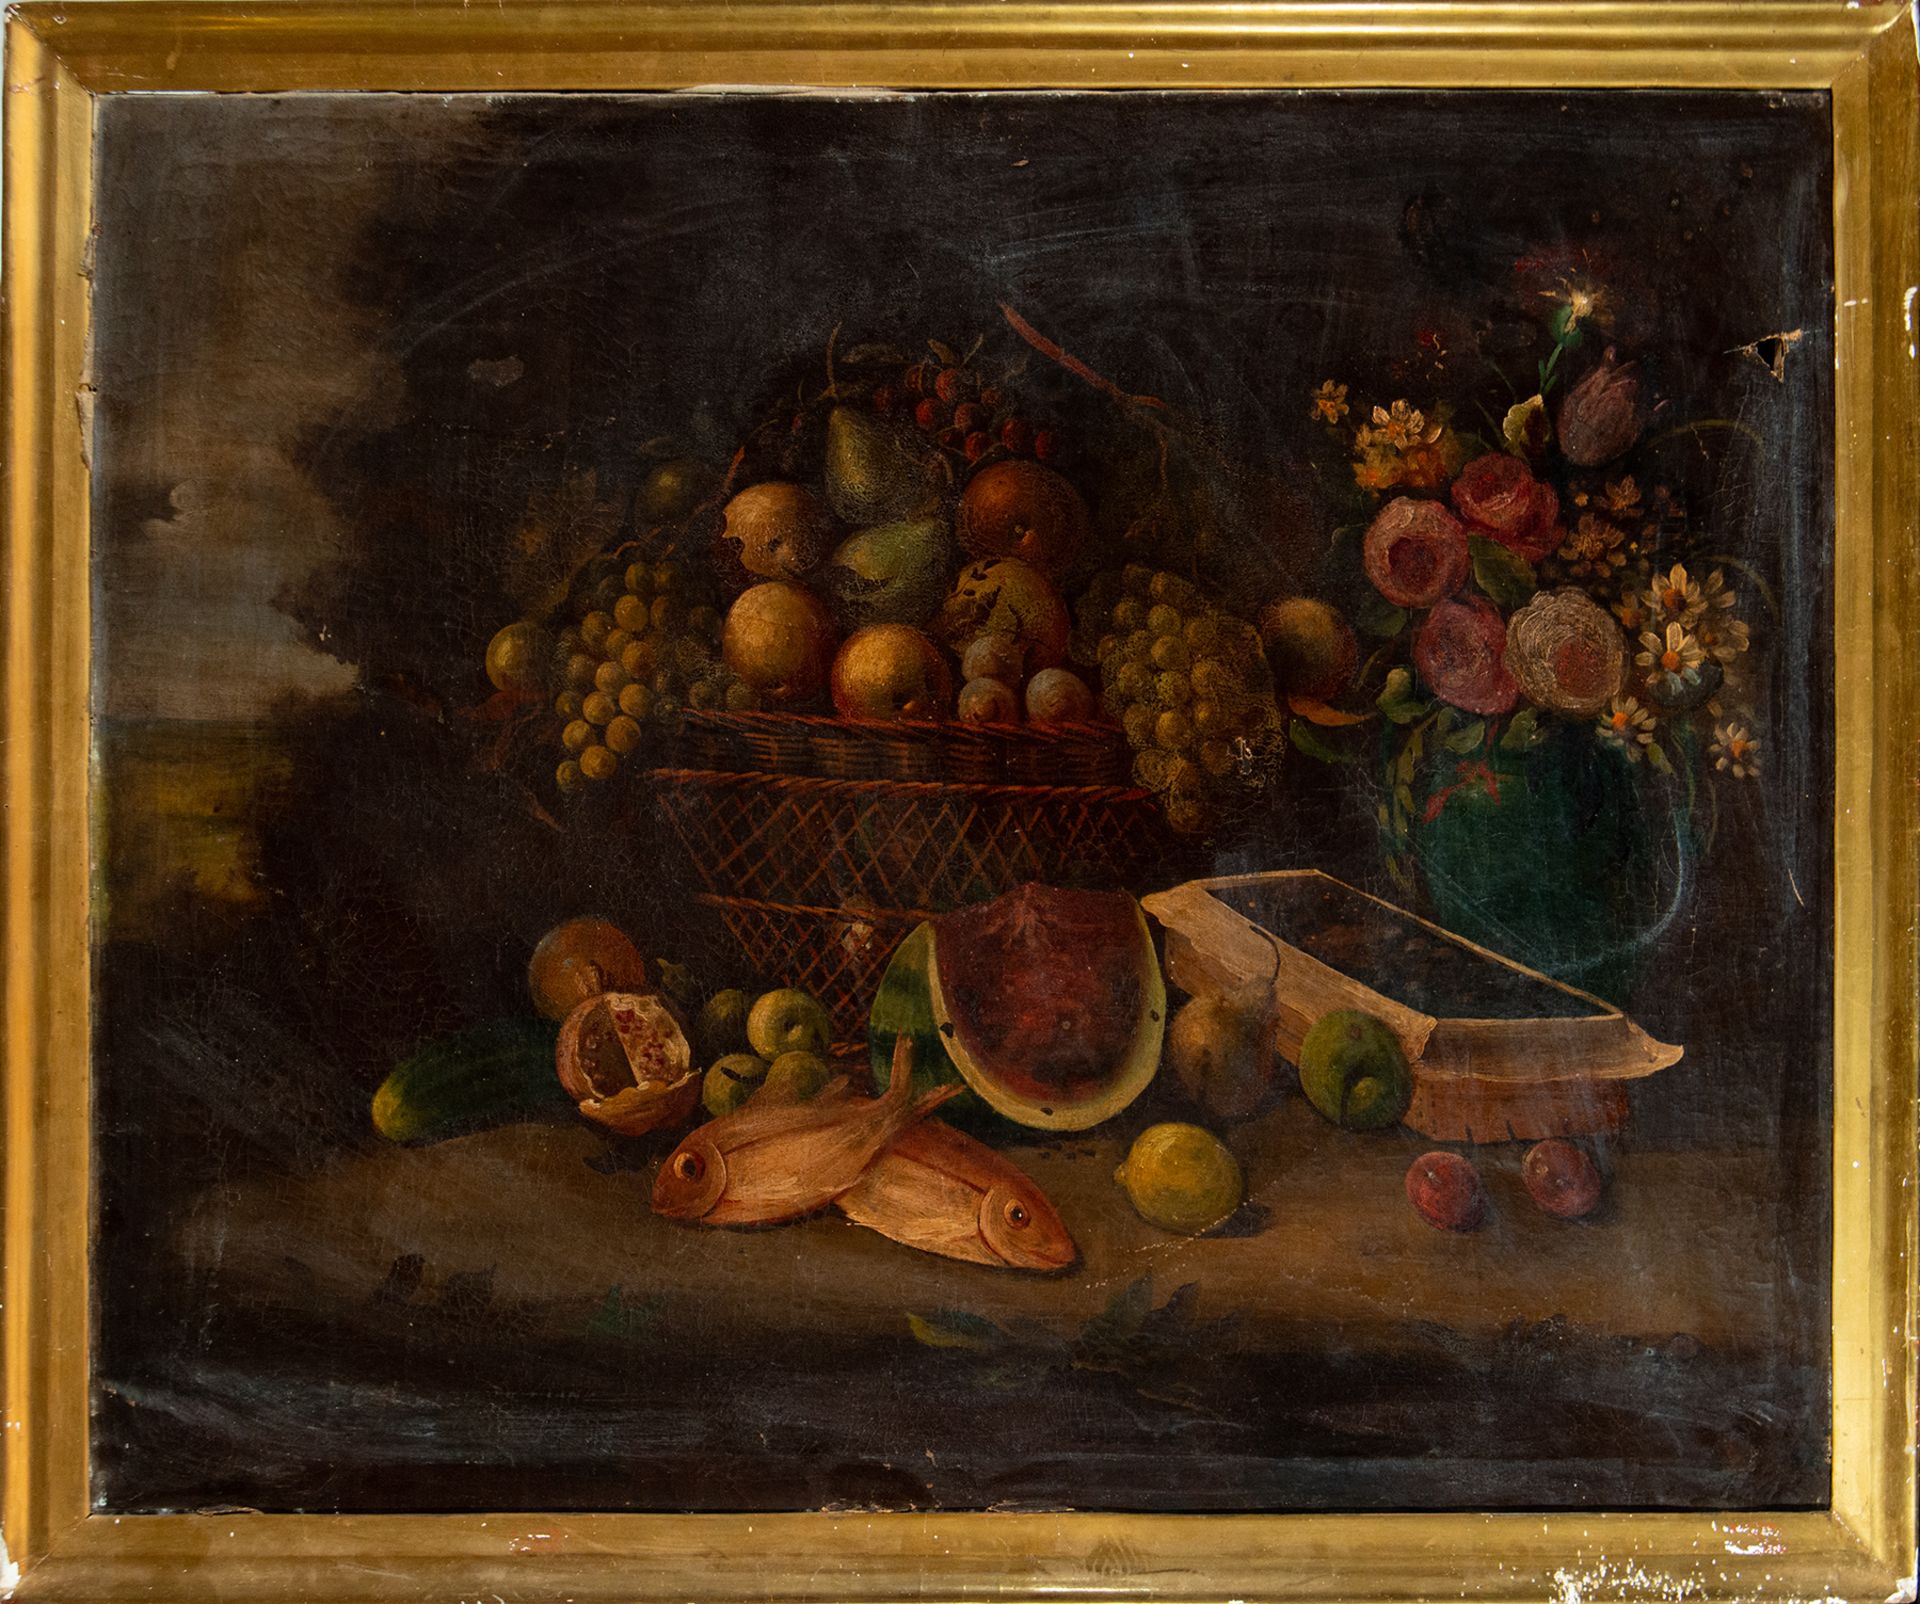 Still Life of Fruit with Lobster, 18th century Italian school